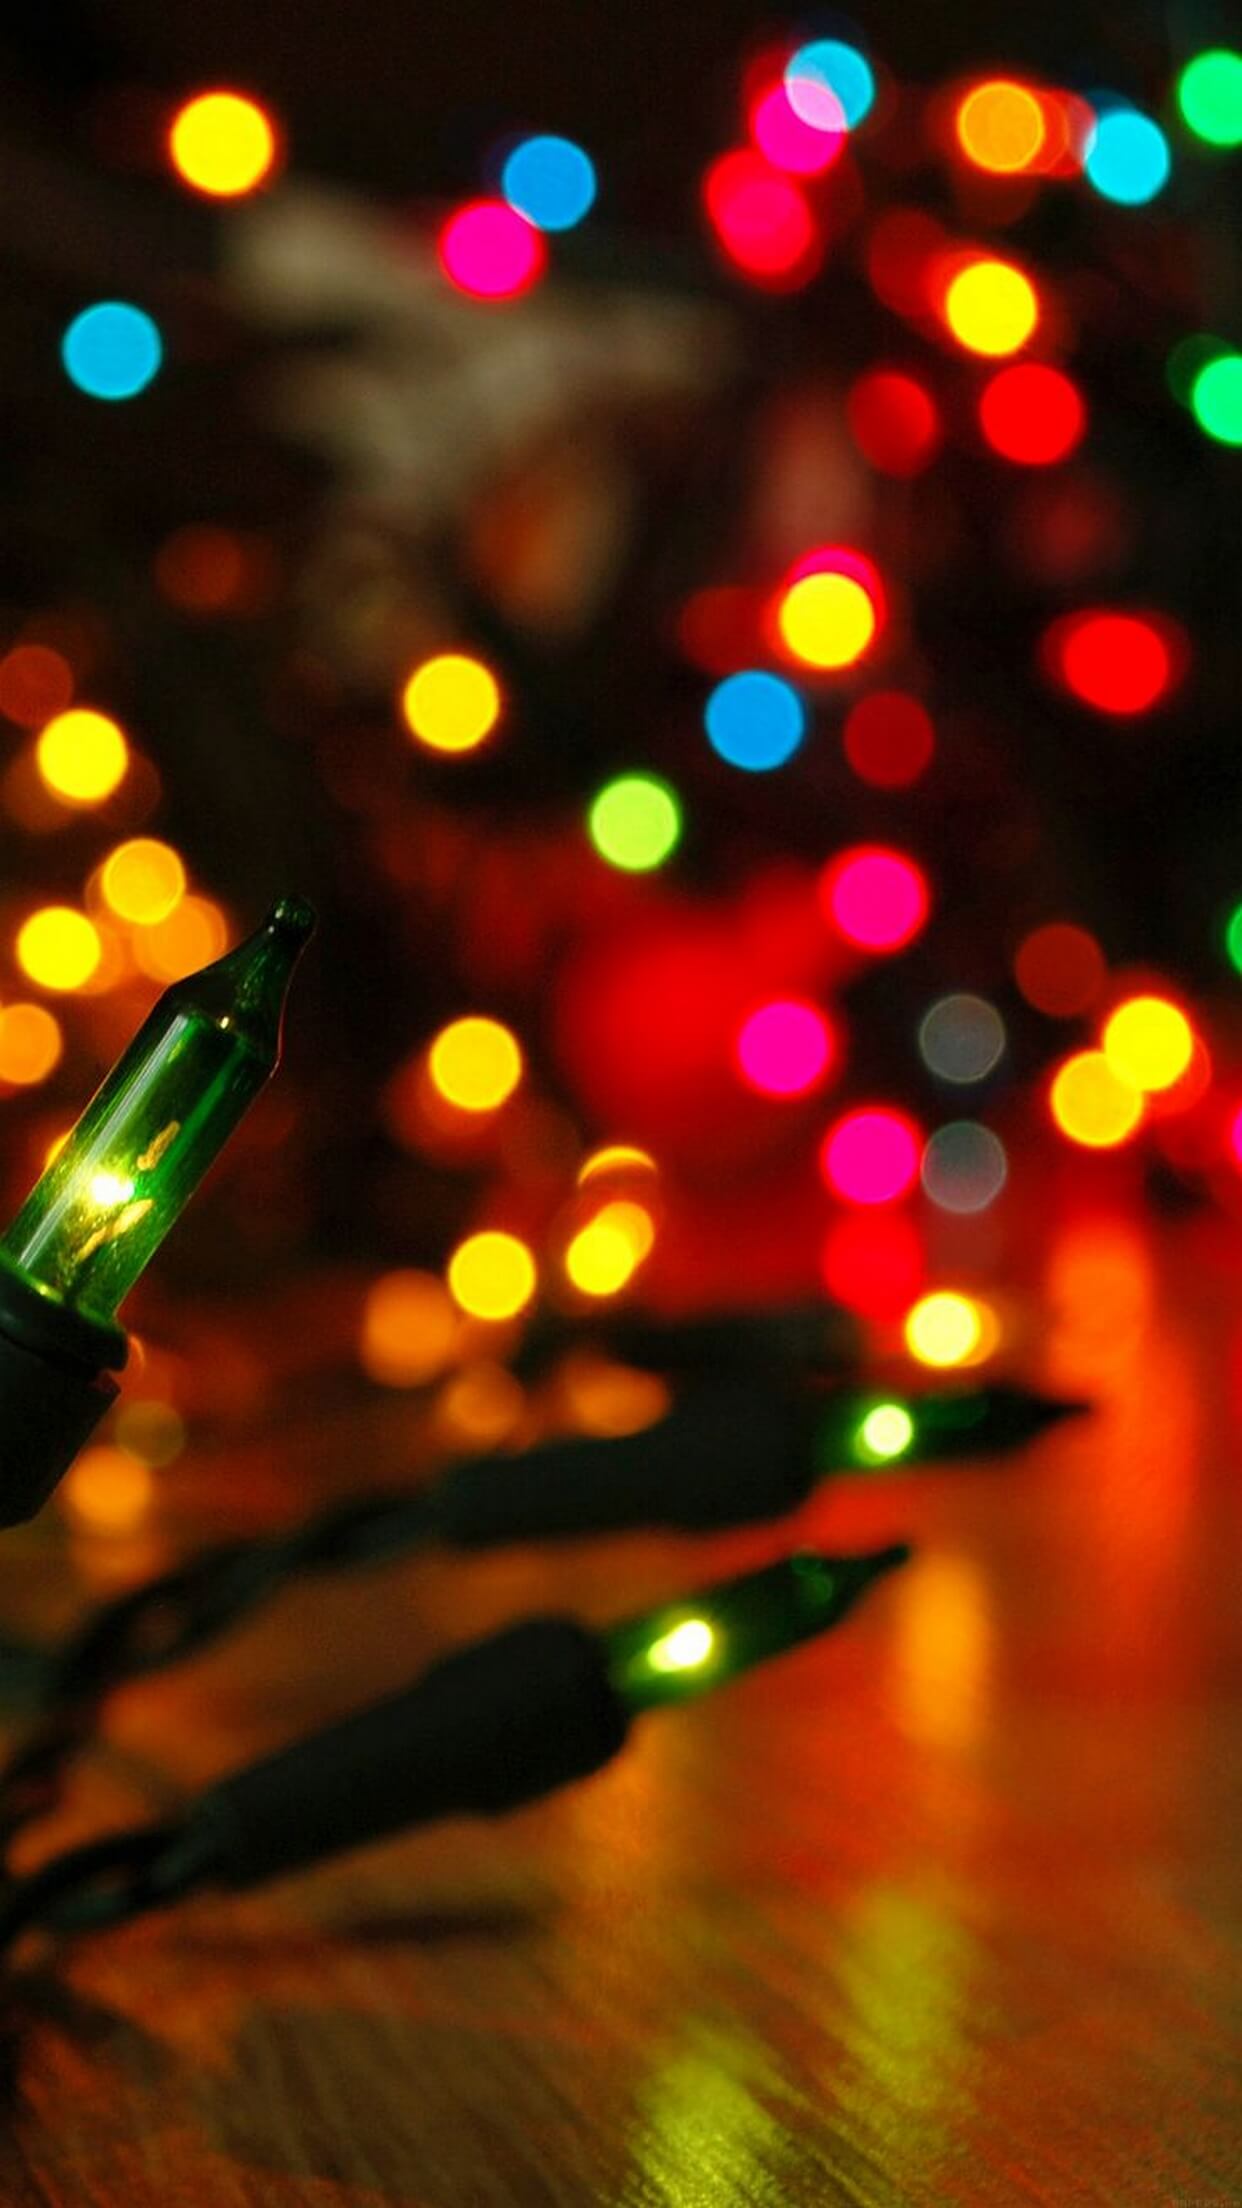 Hình ảnh nền iPhone với đèn Noel sẽ khiến bạn cảm thấy vui tươi và hân hoan hơn trong mùa lễ hội. Hãy chiêm ngưỡng những chiếc điện thoại được trang trí đầy phong cách và mang lại không khí đón Giáng sinh ấm áp trong căn phòng của bạn.